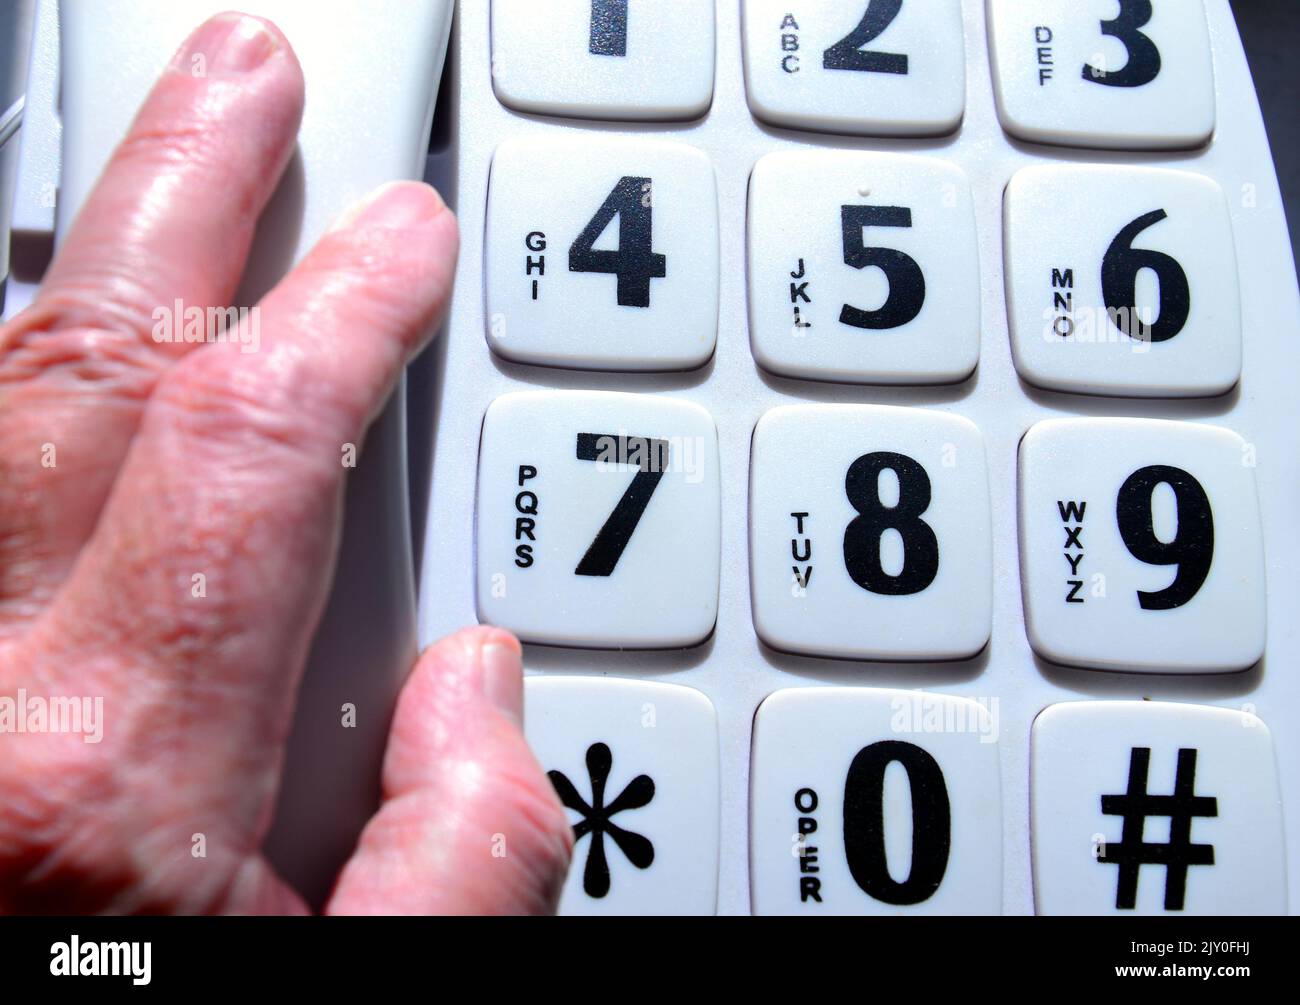 La mano de un hombre mayor o mayor recoge el teléfono de un teléfono fijo de botón grande que está dirigido a los usuarios ancianos, discapacitados y con problemas de visión Foto de stock